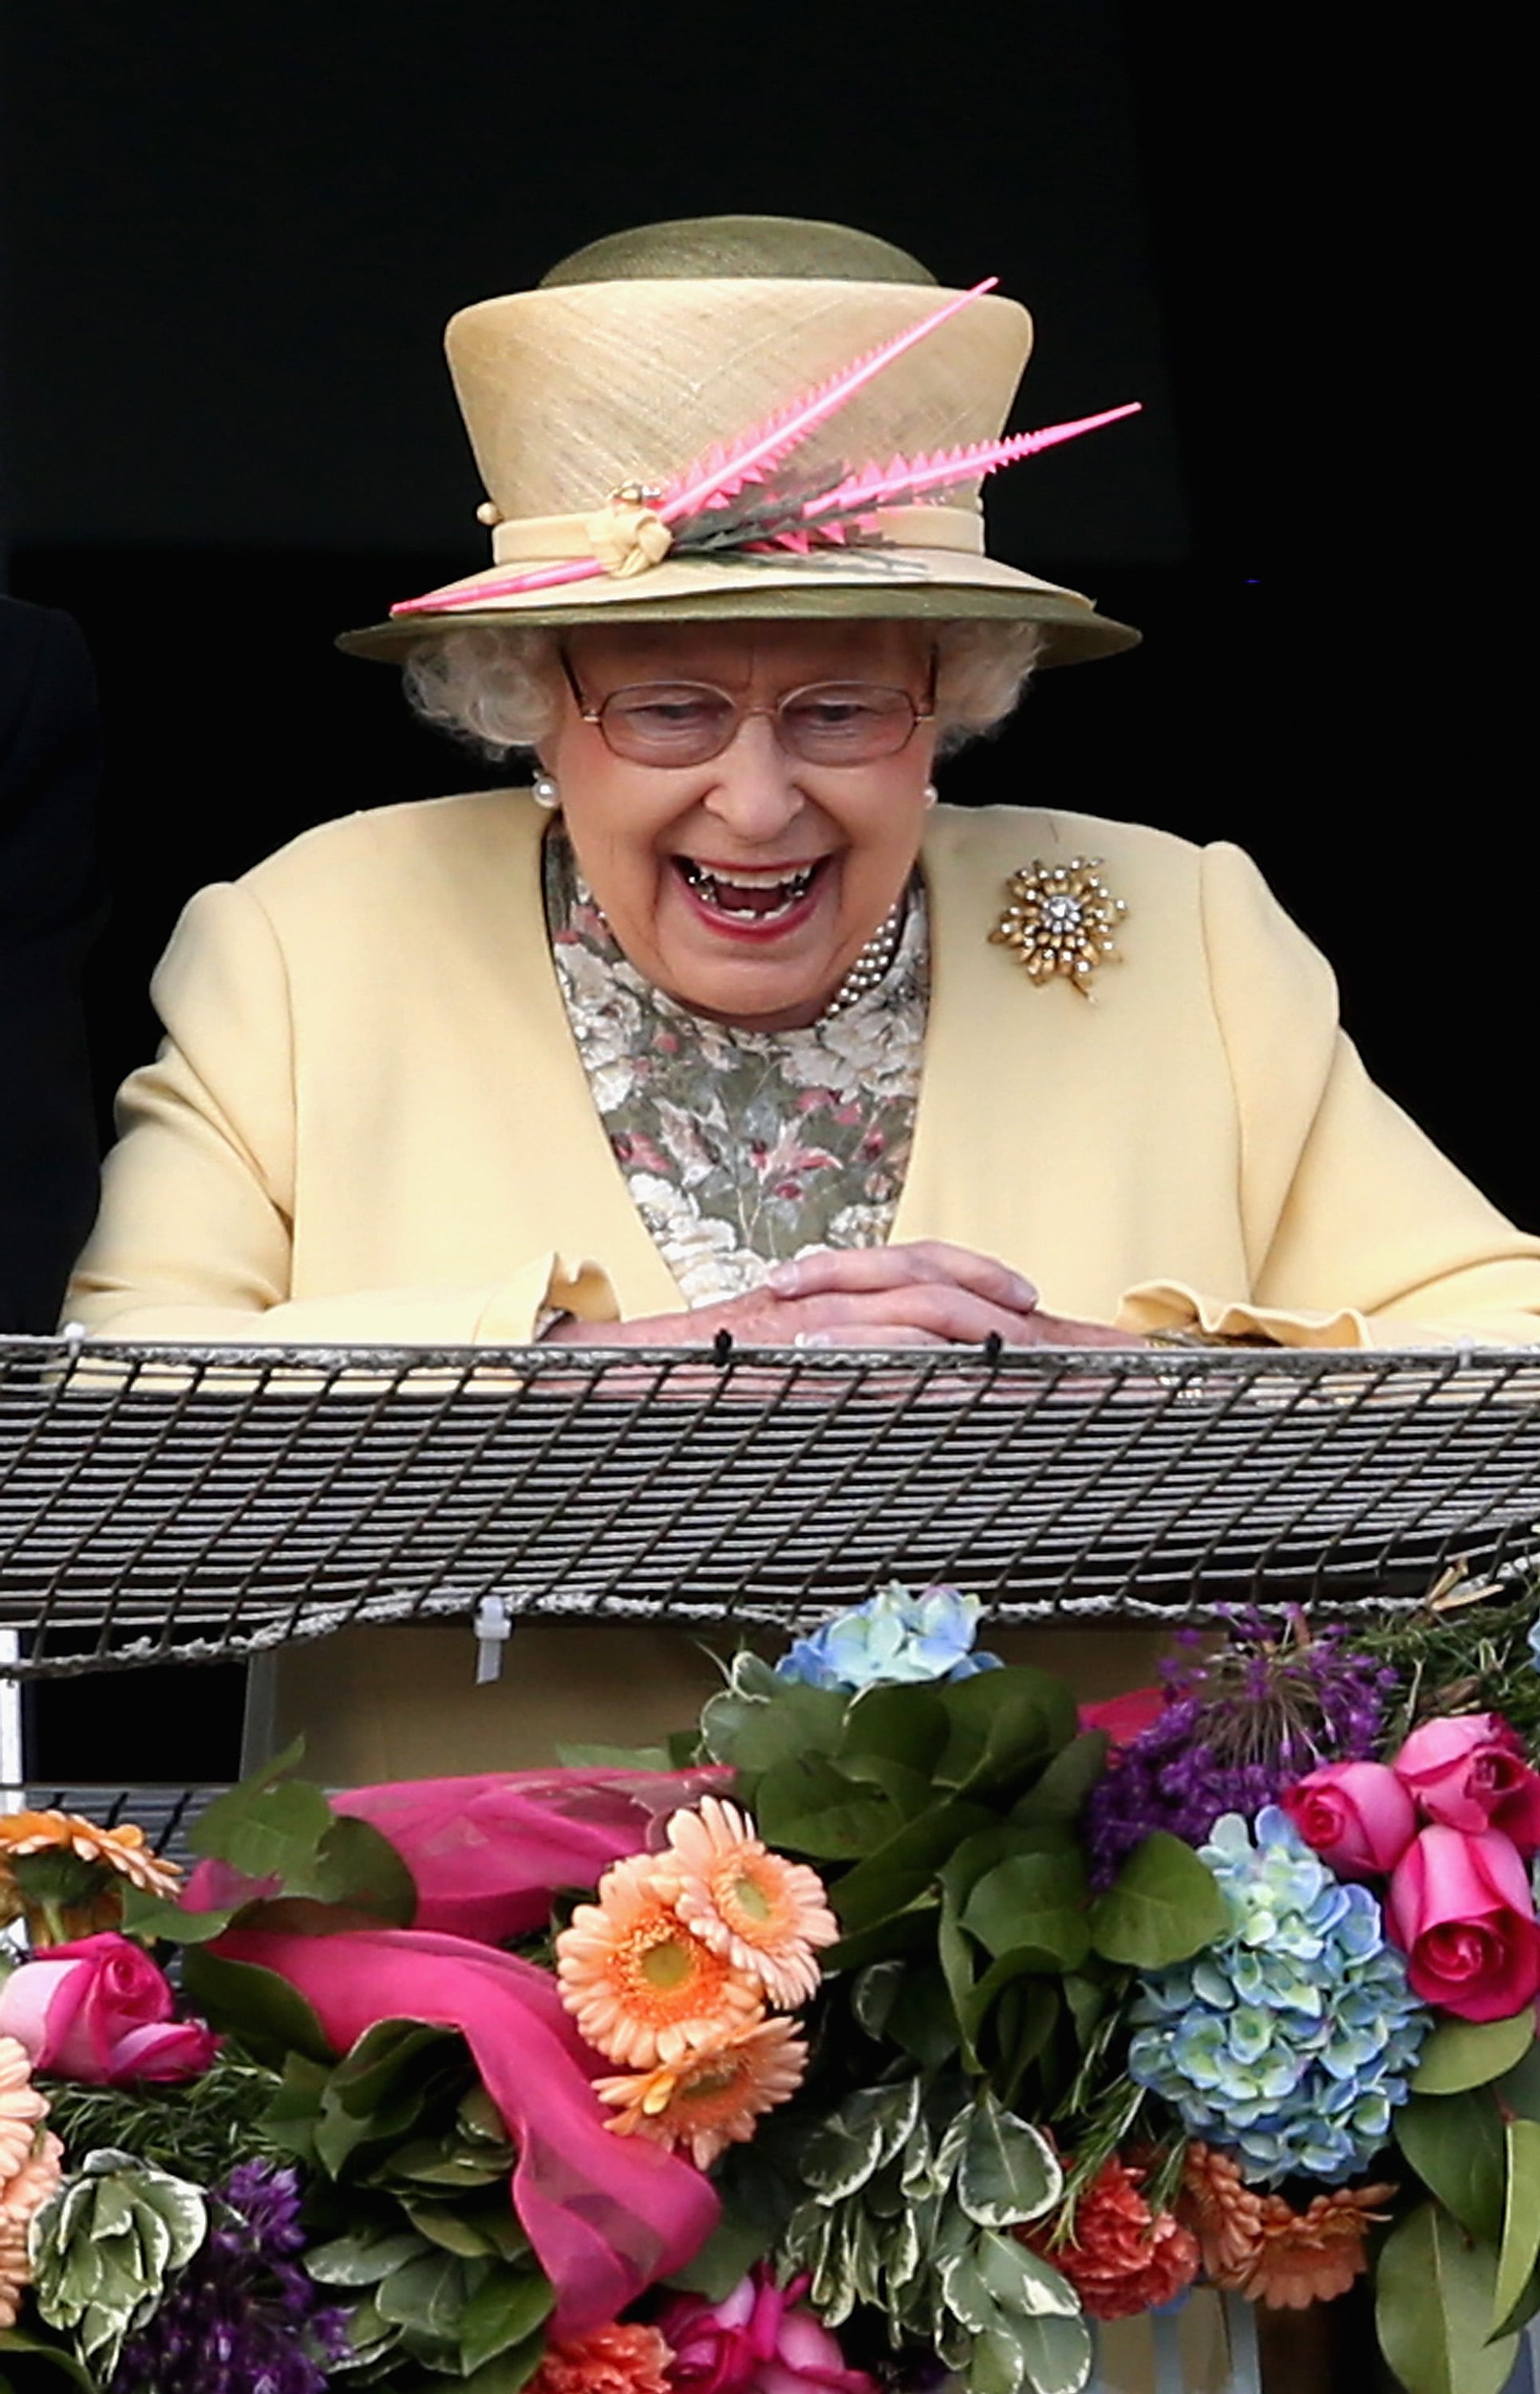 Queen Elizabeth II watches a horse race in 2015